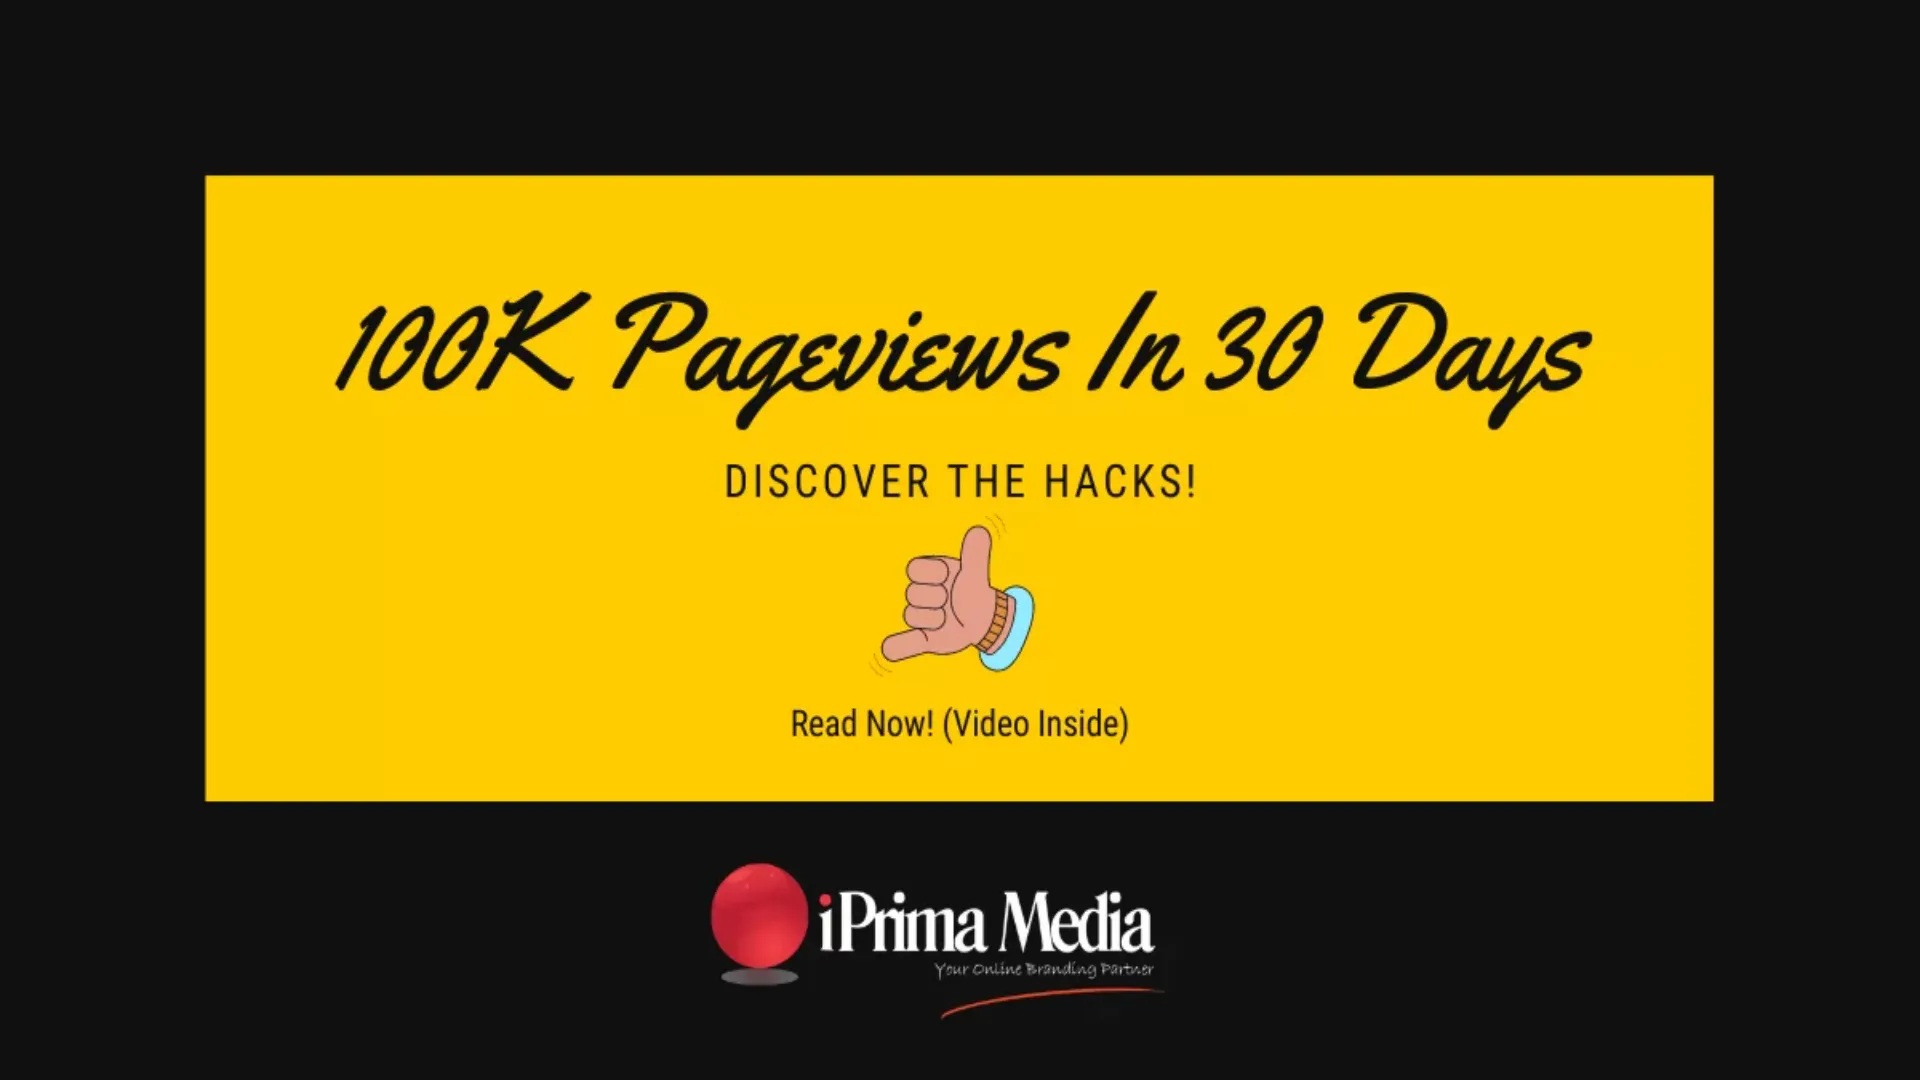 100K Pageviews